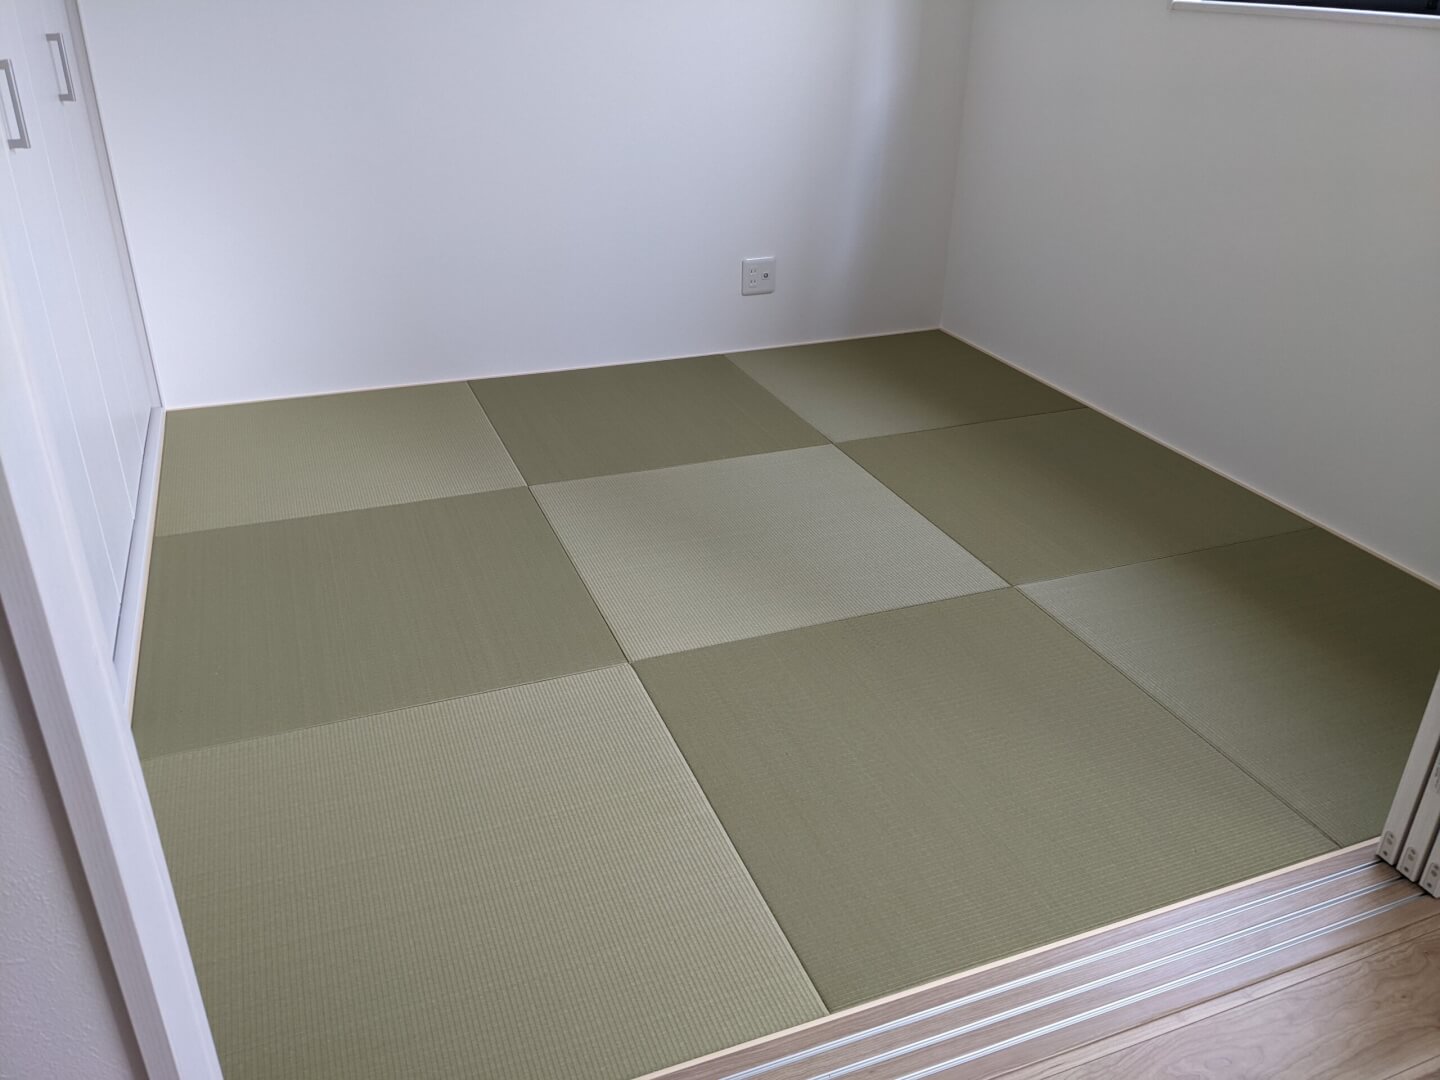 大和高田市の新築へ半畳ヘリナシ新畳を納品させていただきました。